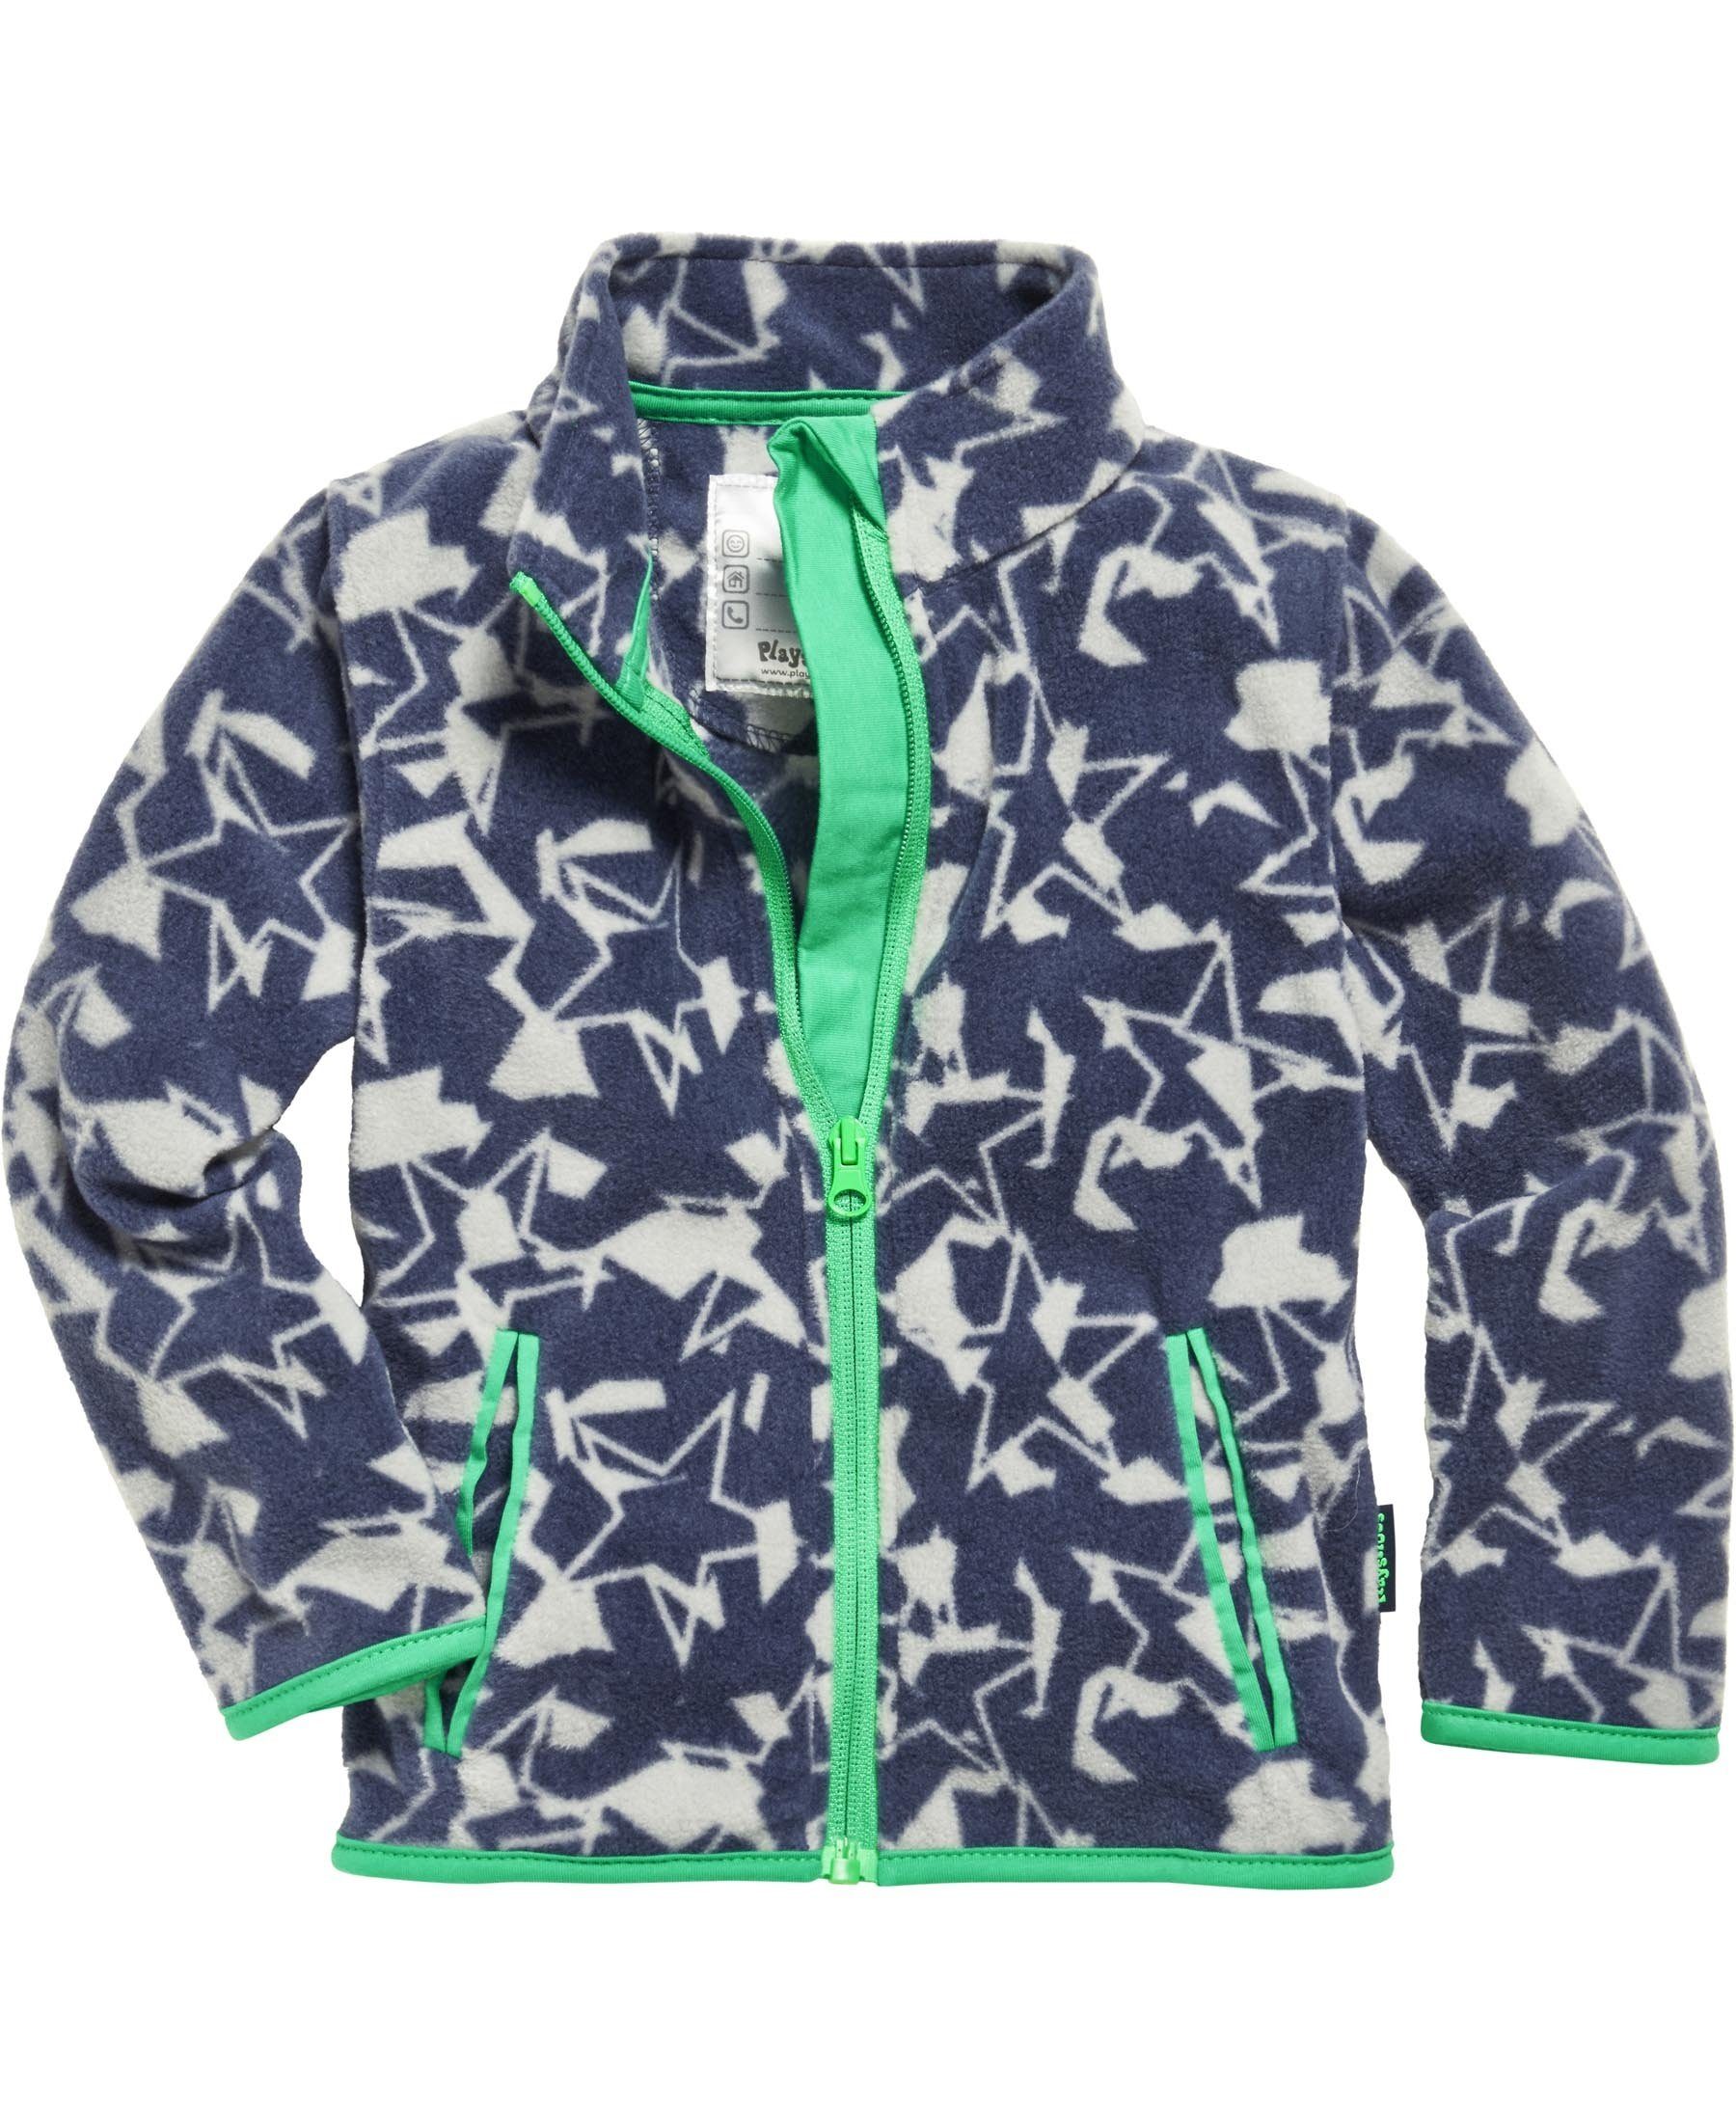 der Camouflage, Sternen-Print in allover Fleecejacke Playshoes Sterne Camouflage-Optik Fleece-Jacke Fleece-Jacke mit